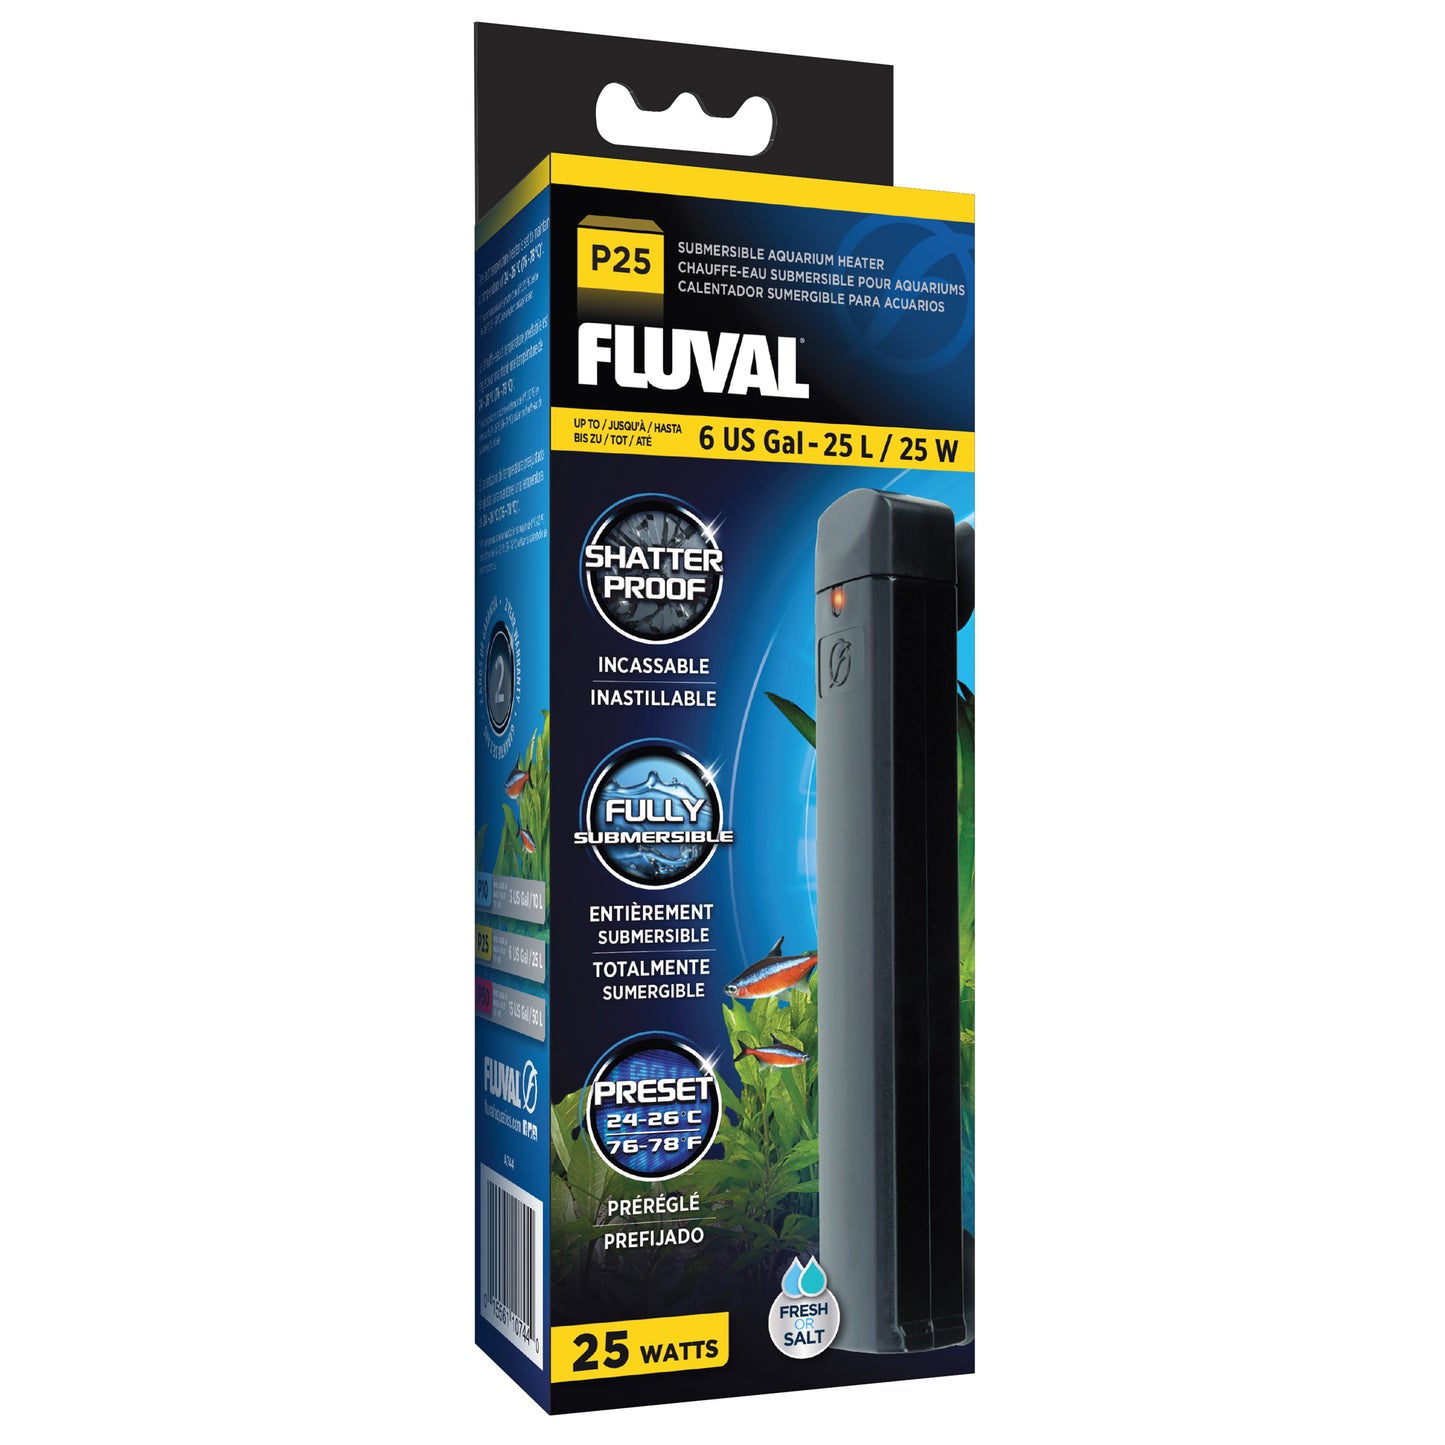 Fluval P10/P25/P50 Submersible Aquarium Heater